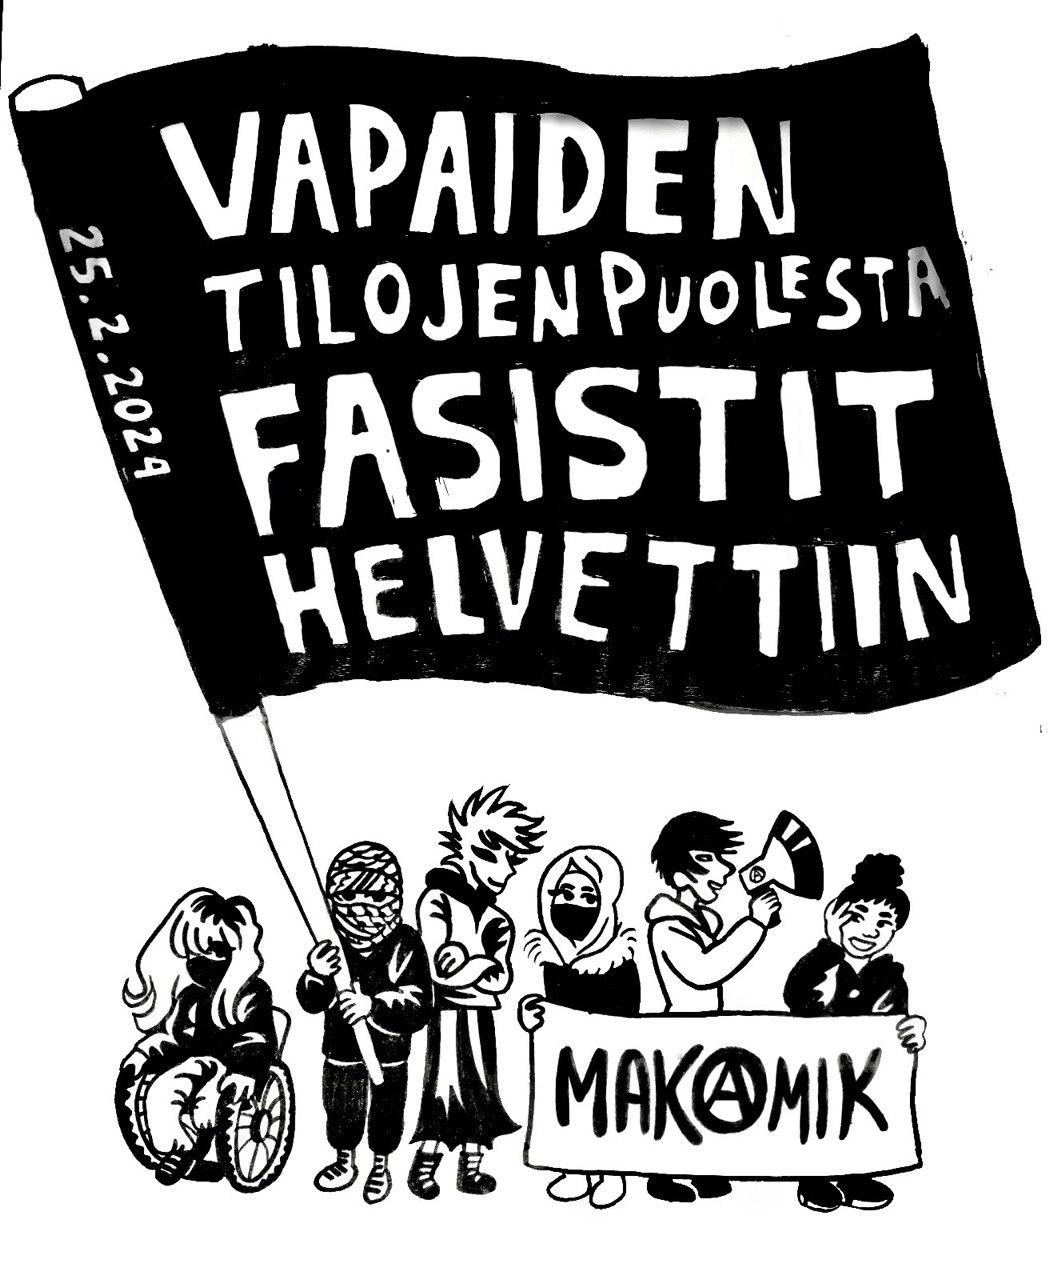 Mielenosoittajia lipun kanssa jossa lukee VAPAIDEN TILOJEN PUOLESTA, FASISTIT HELVETTIIN ja banderolli jossa lukee MAK(A)MIK /// Demonstrators with a flag that says "for free spaces, fascists go to hell" in finnish and a banner reading MAK(A)MIK